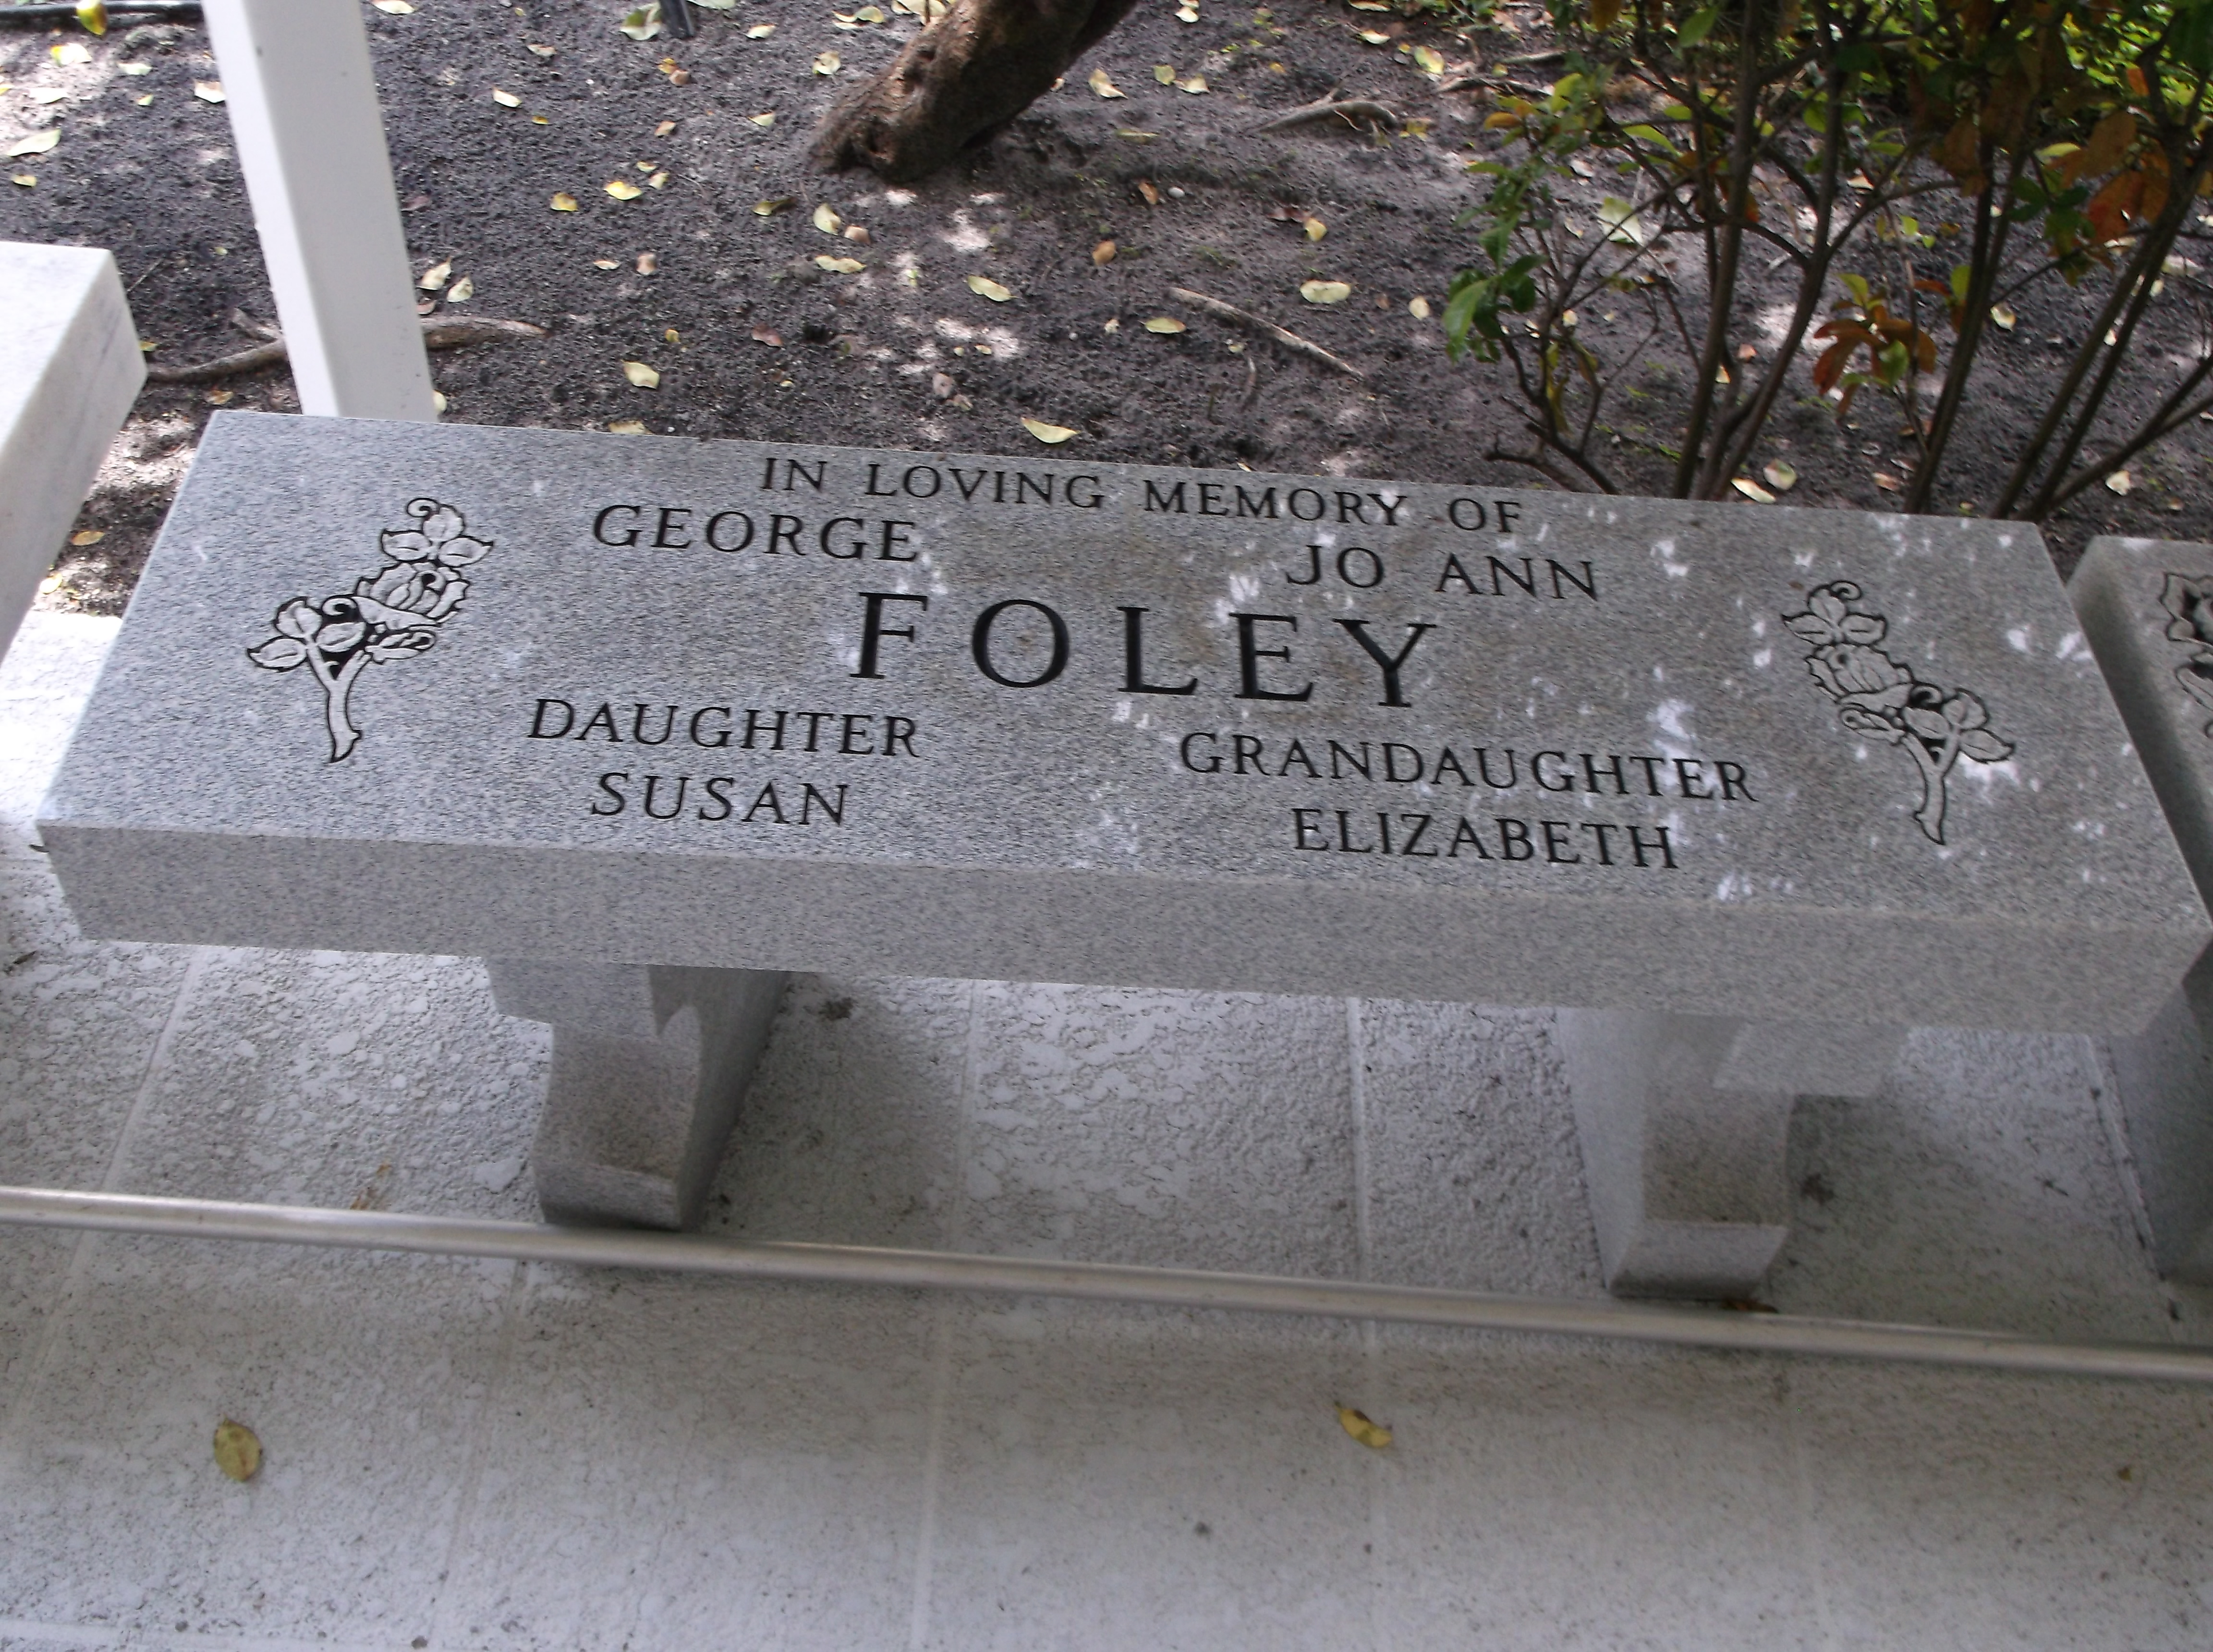 George E Foley